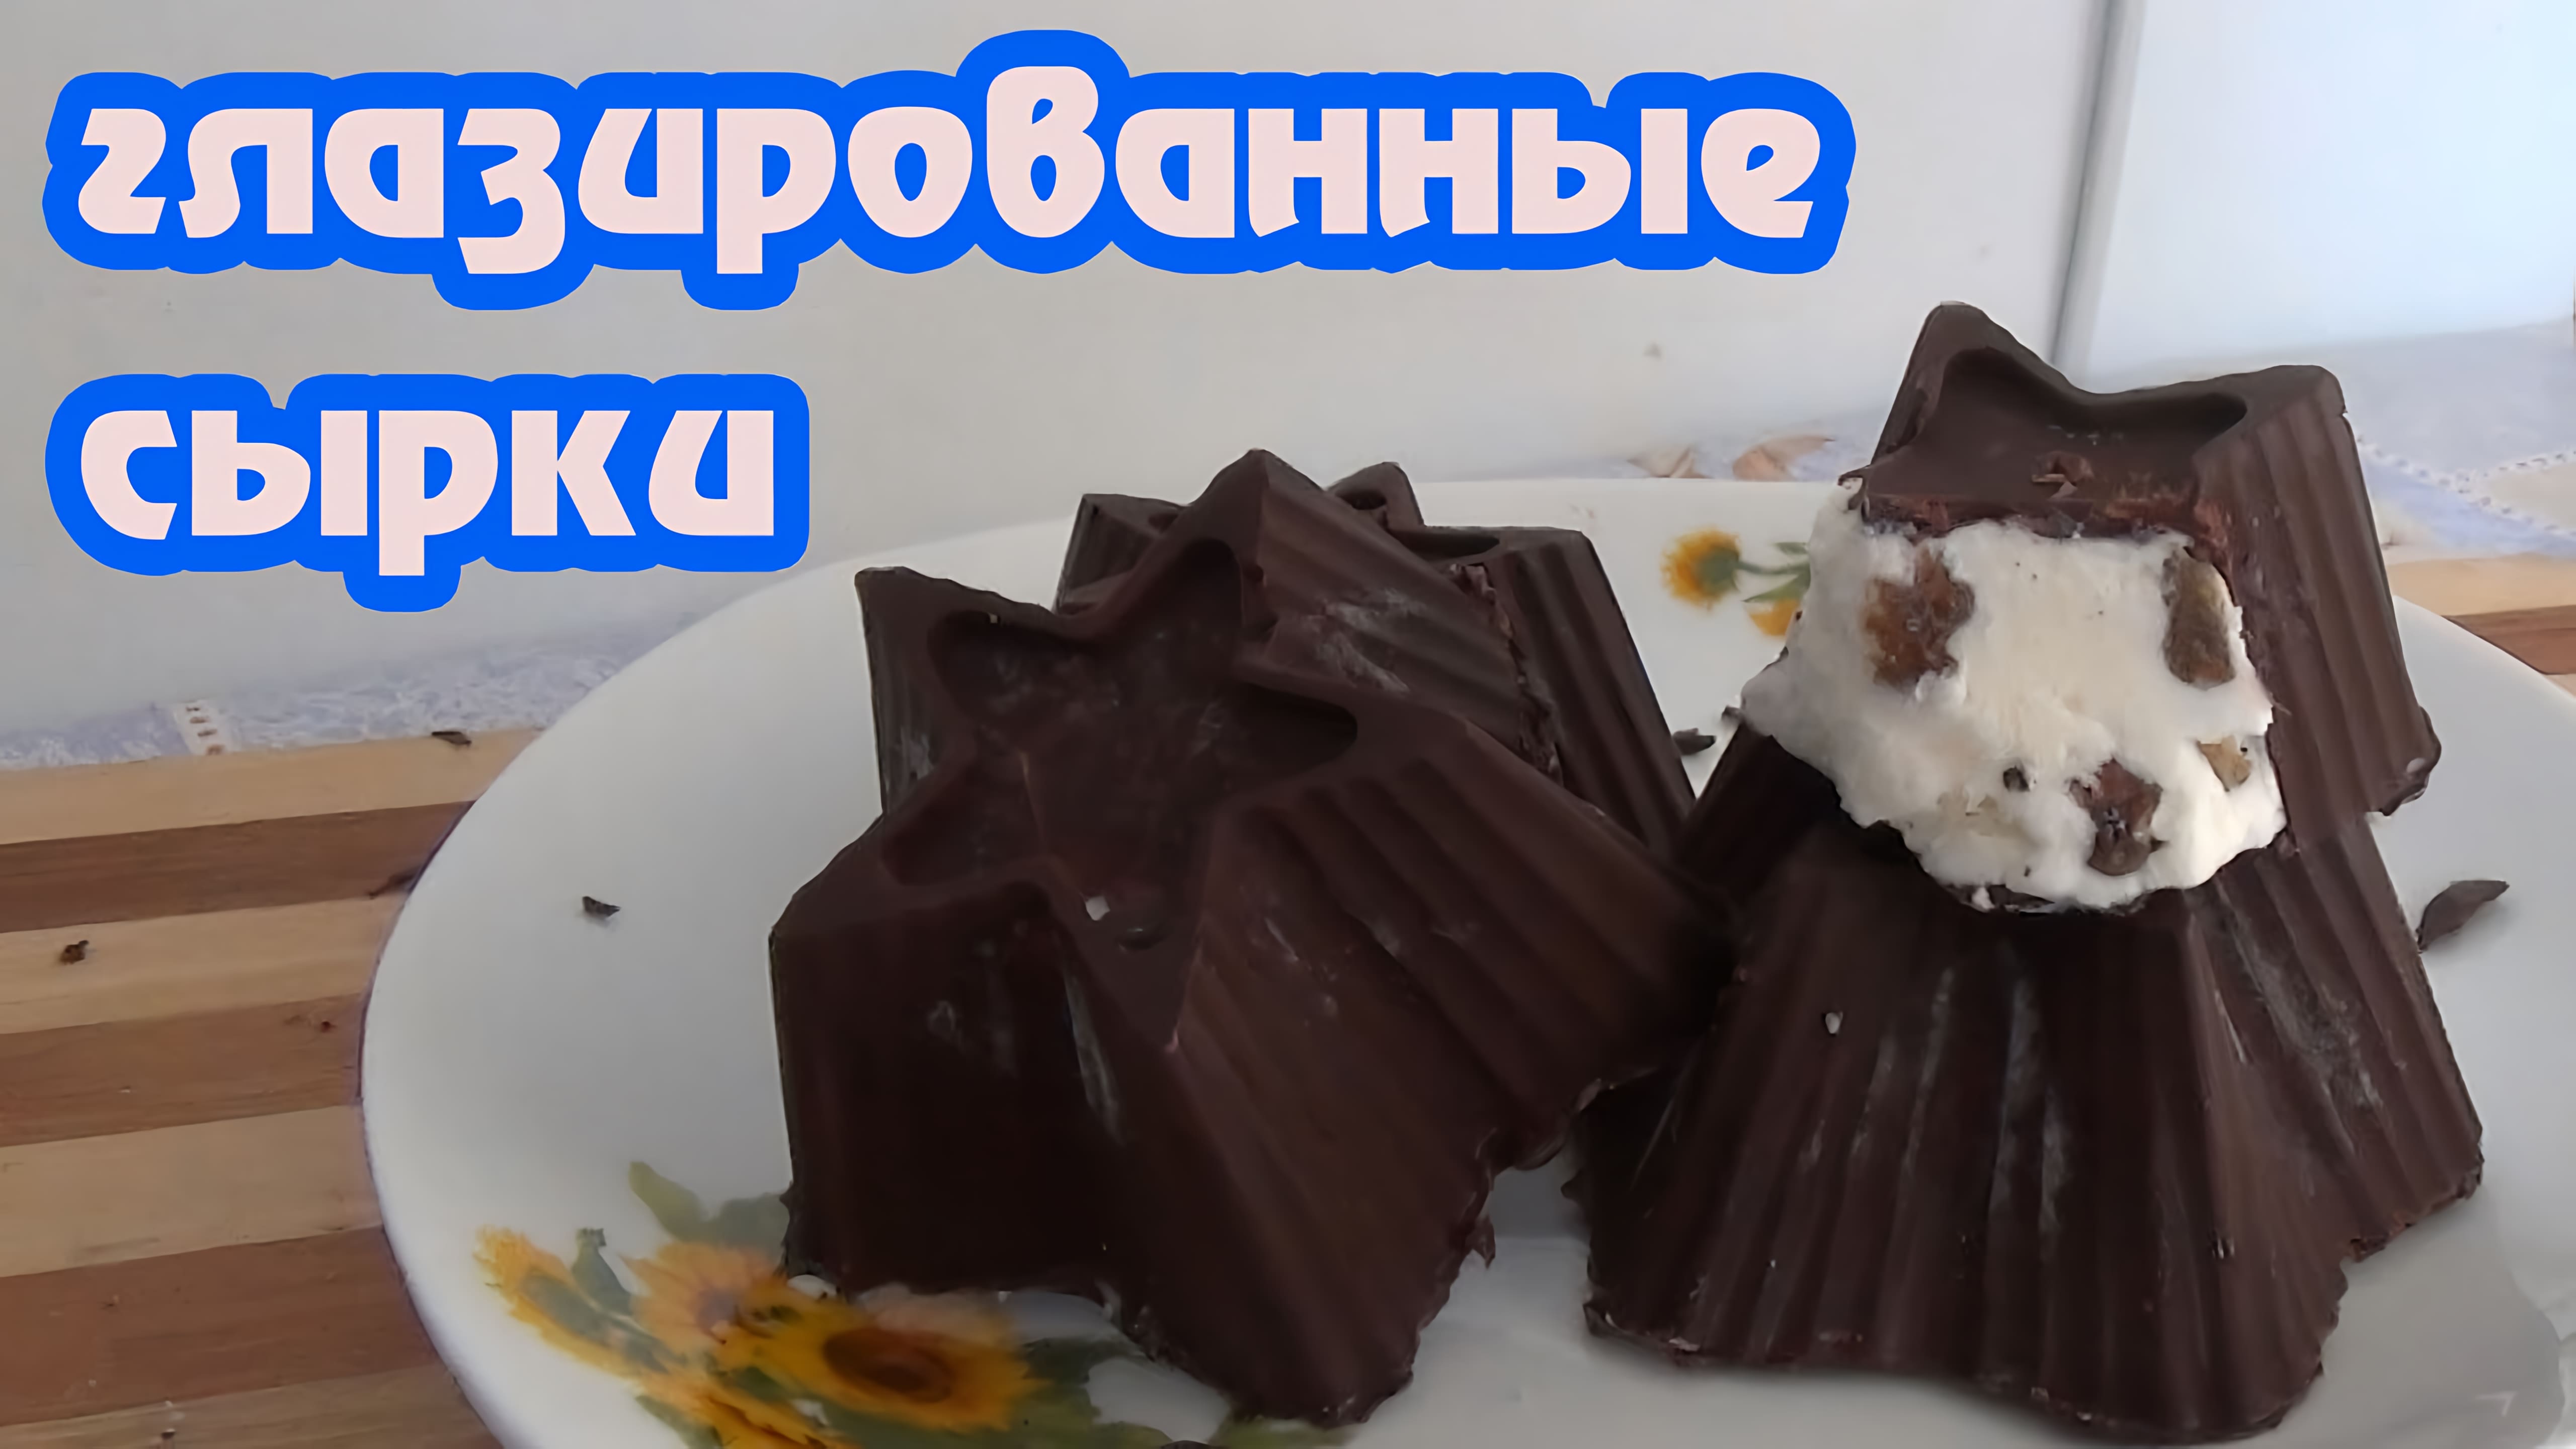 Видео: Глазированные сырки и шоколадно-творожный десерт — настоящие деликатесы!